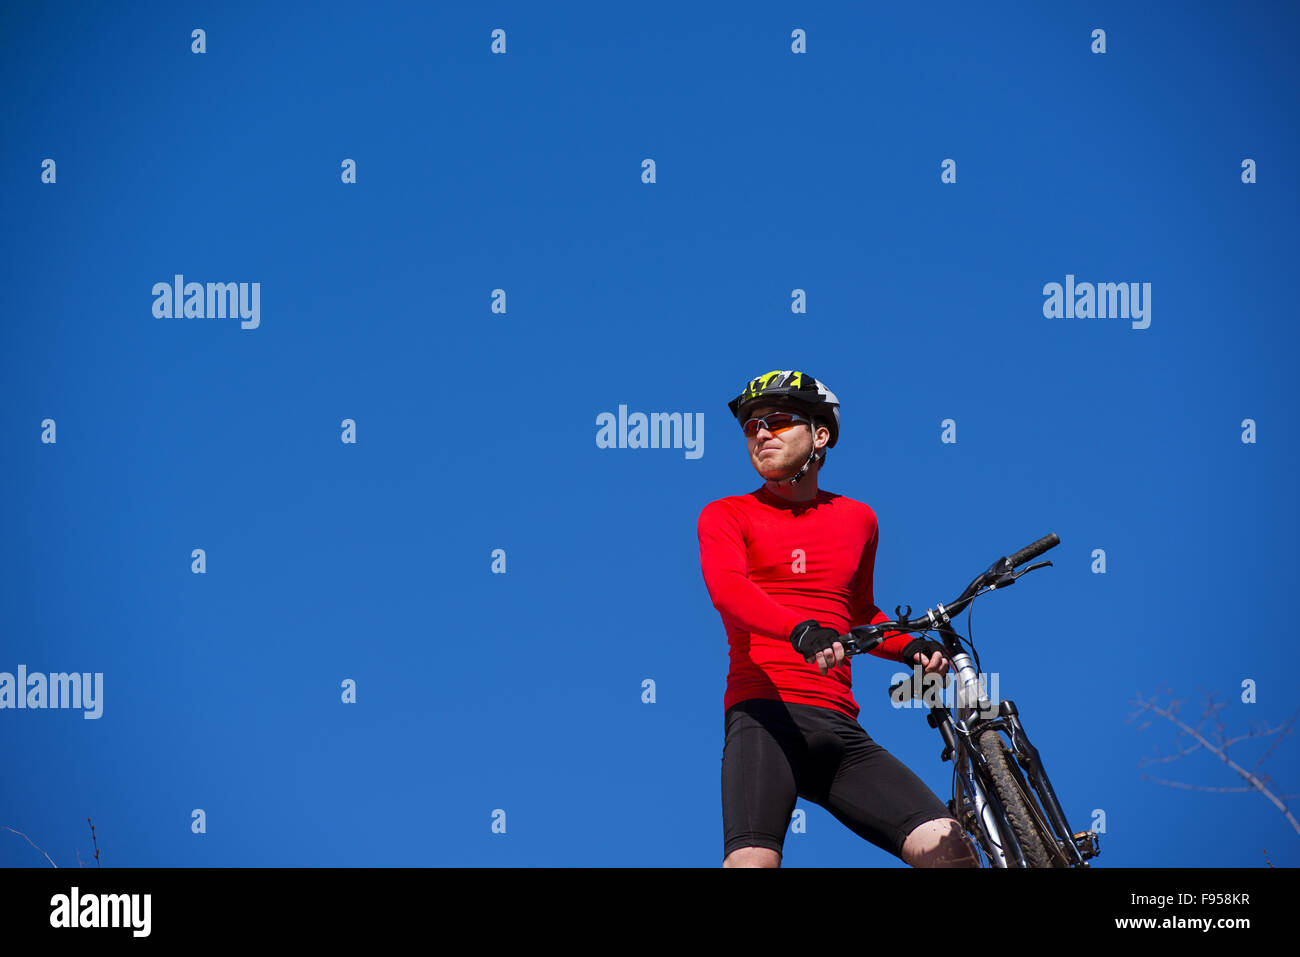 Ciclista uomo in piedi sulla cima di una montagna con la bicicletta e godersi la vista della valle in una giornata di sole contro un cielo blu Foto Stock